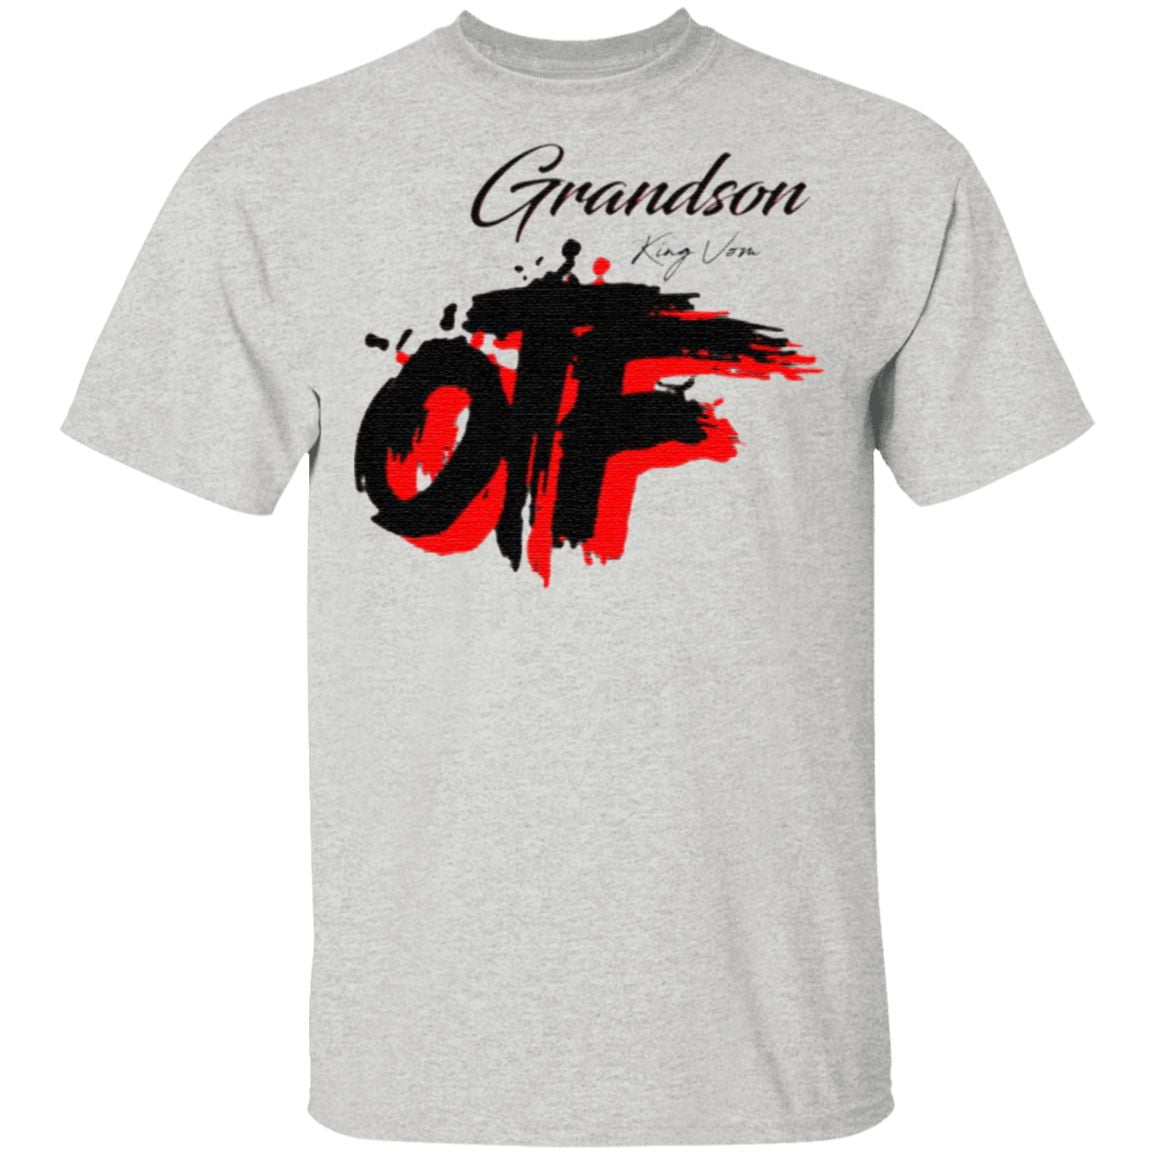 Grandson King Von Off T Shirt